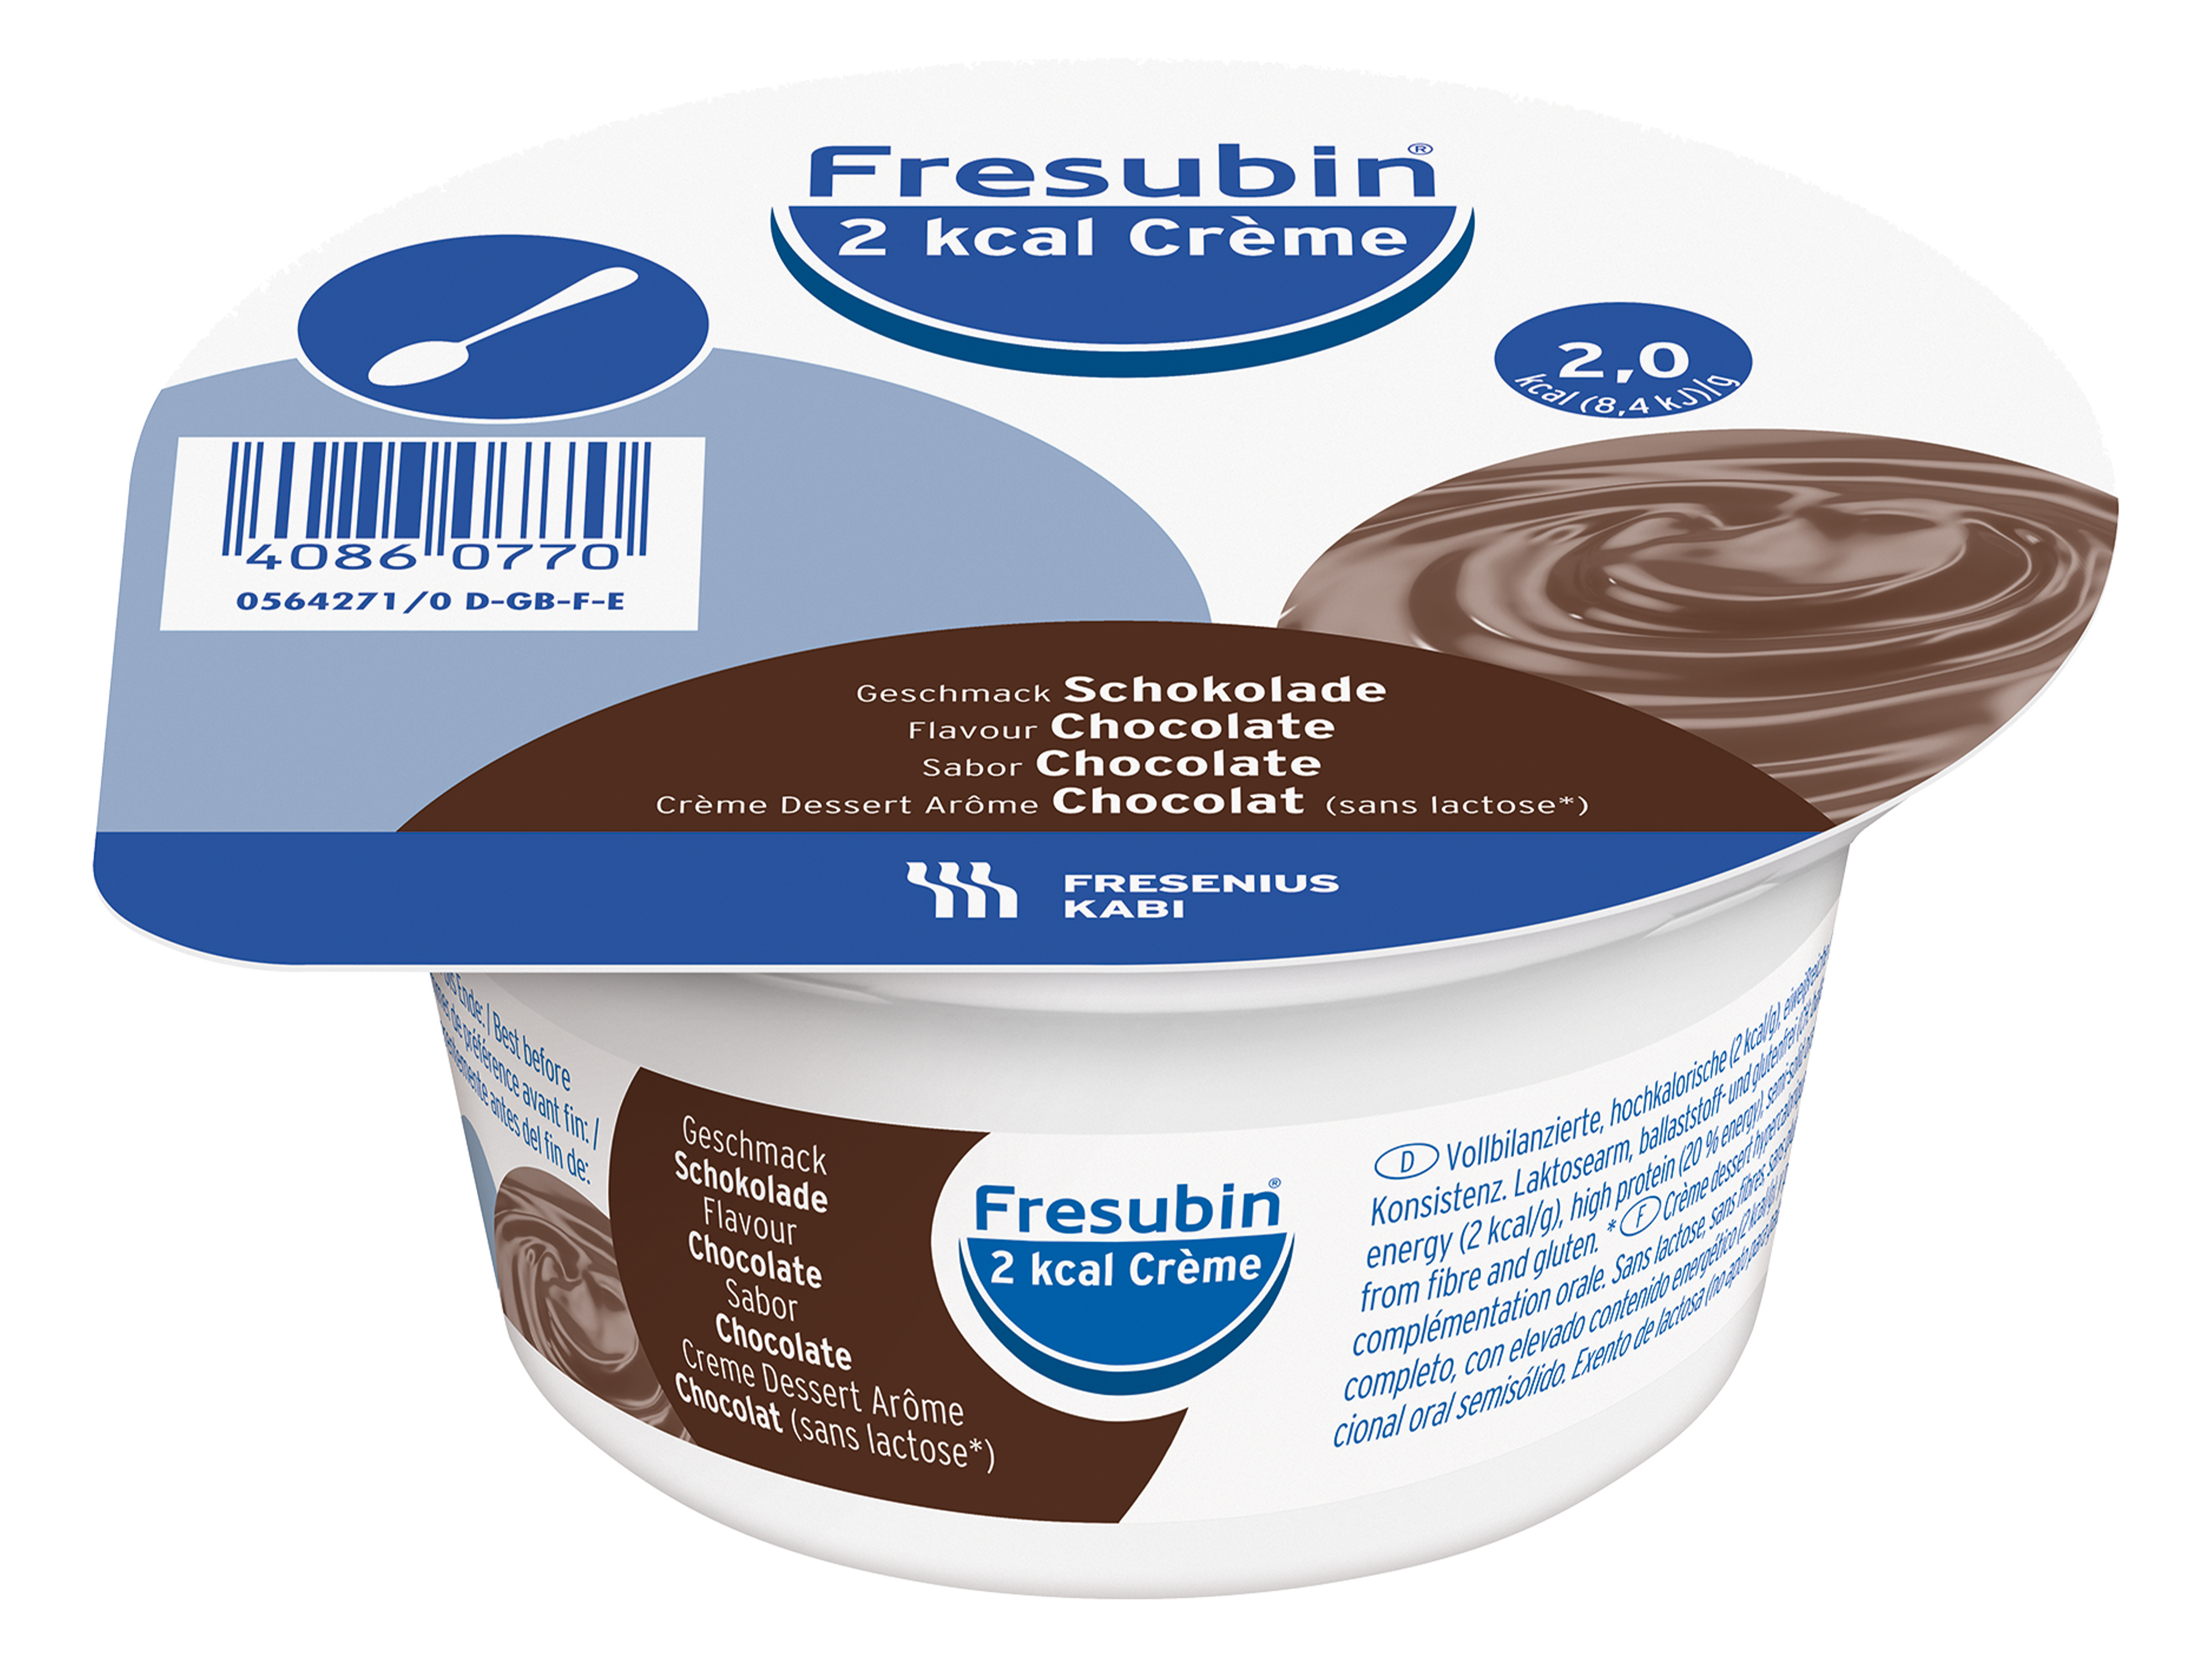 Fresubin 2kcal Crème sjokolade, 4x125 ml